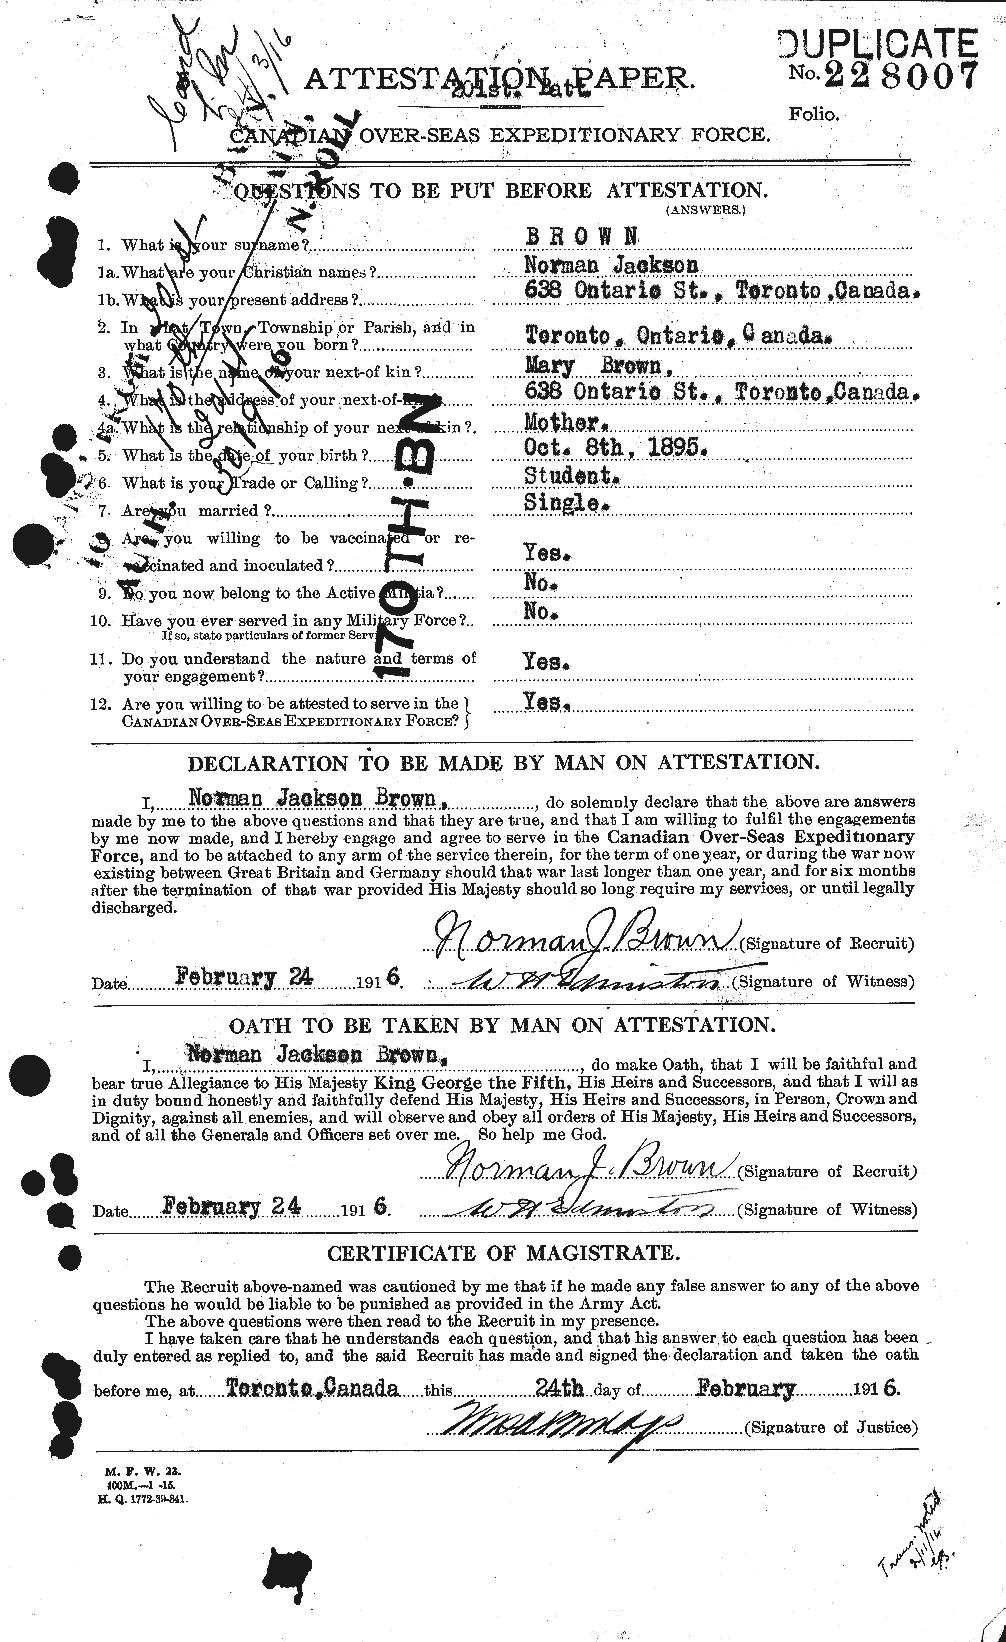 Dossiers du Personnel de la Première Guerre mondiale - CEC 267112a